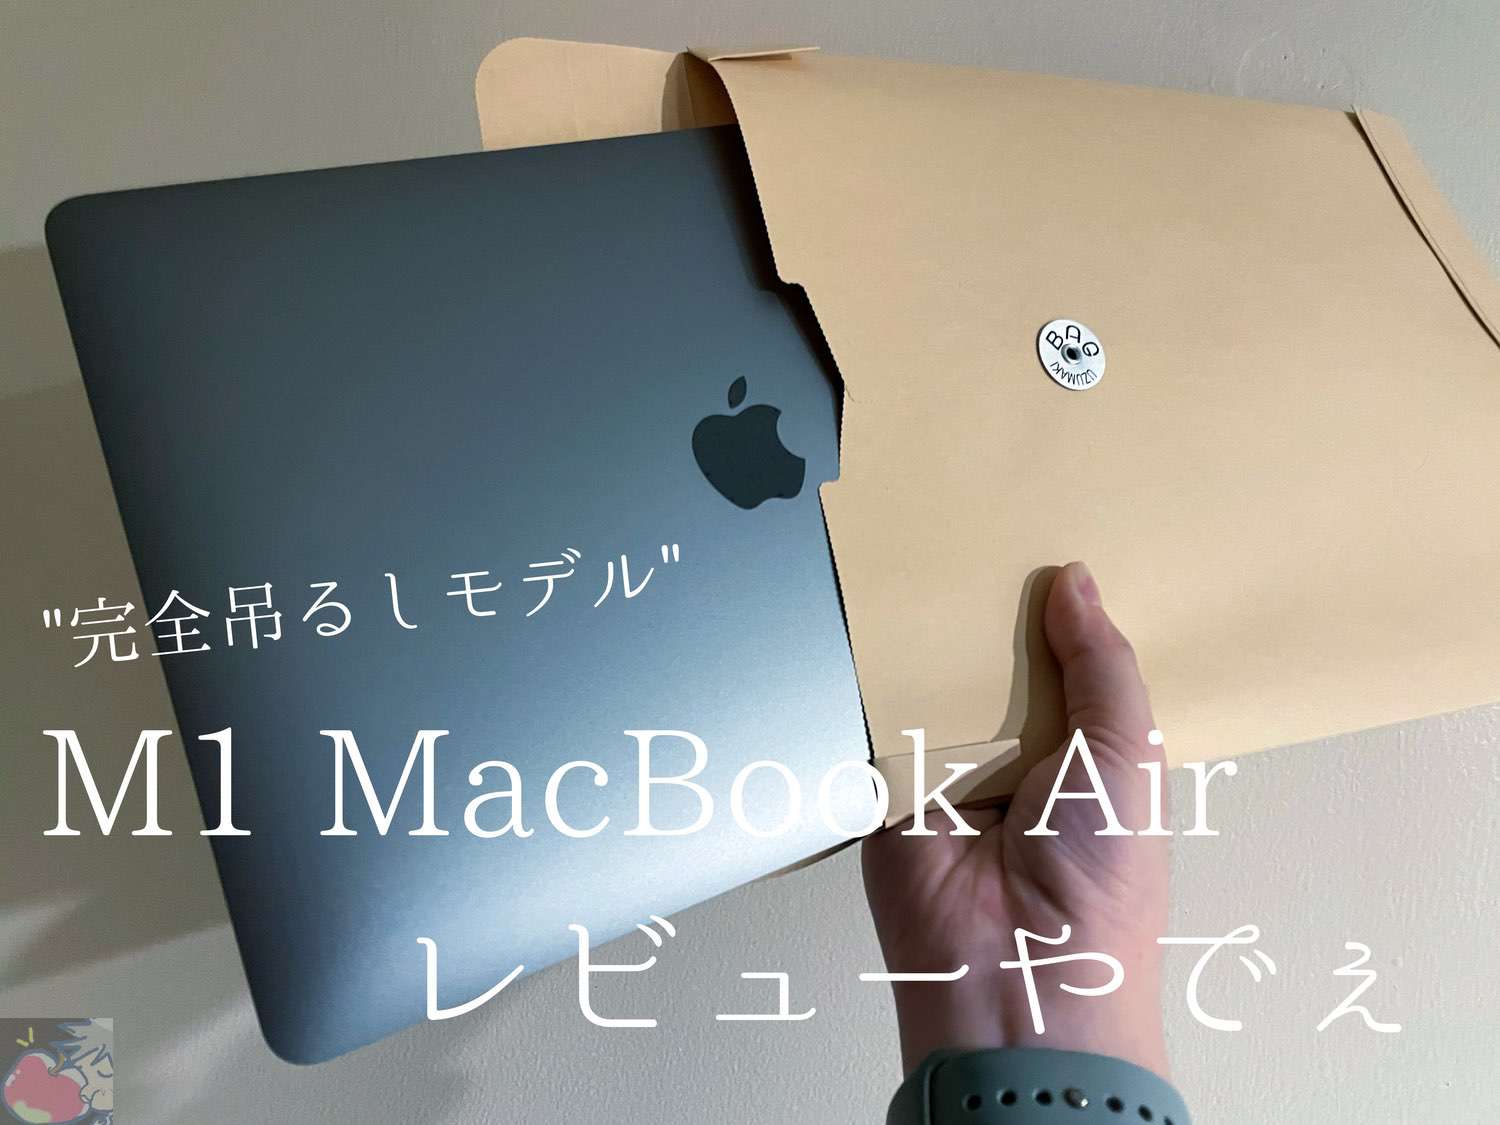 M1 MacBook Air完全吊るしモデルレビュー「確かに凄いけど